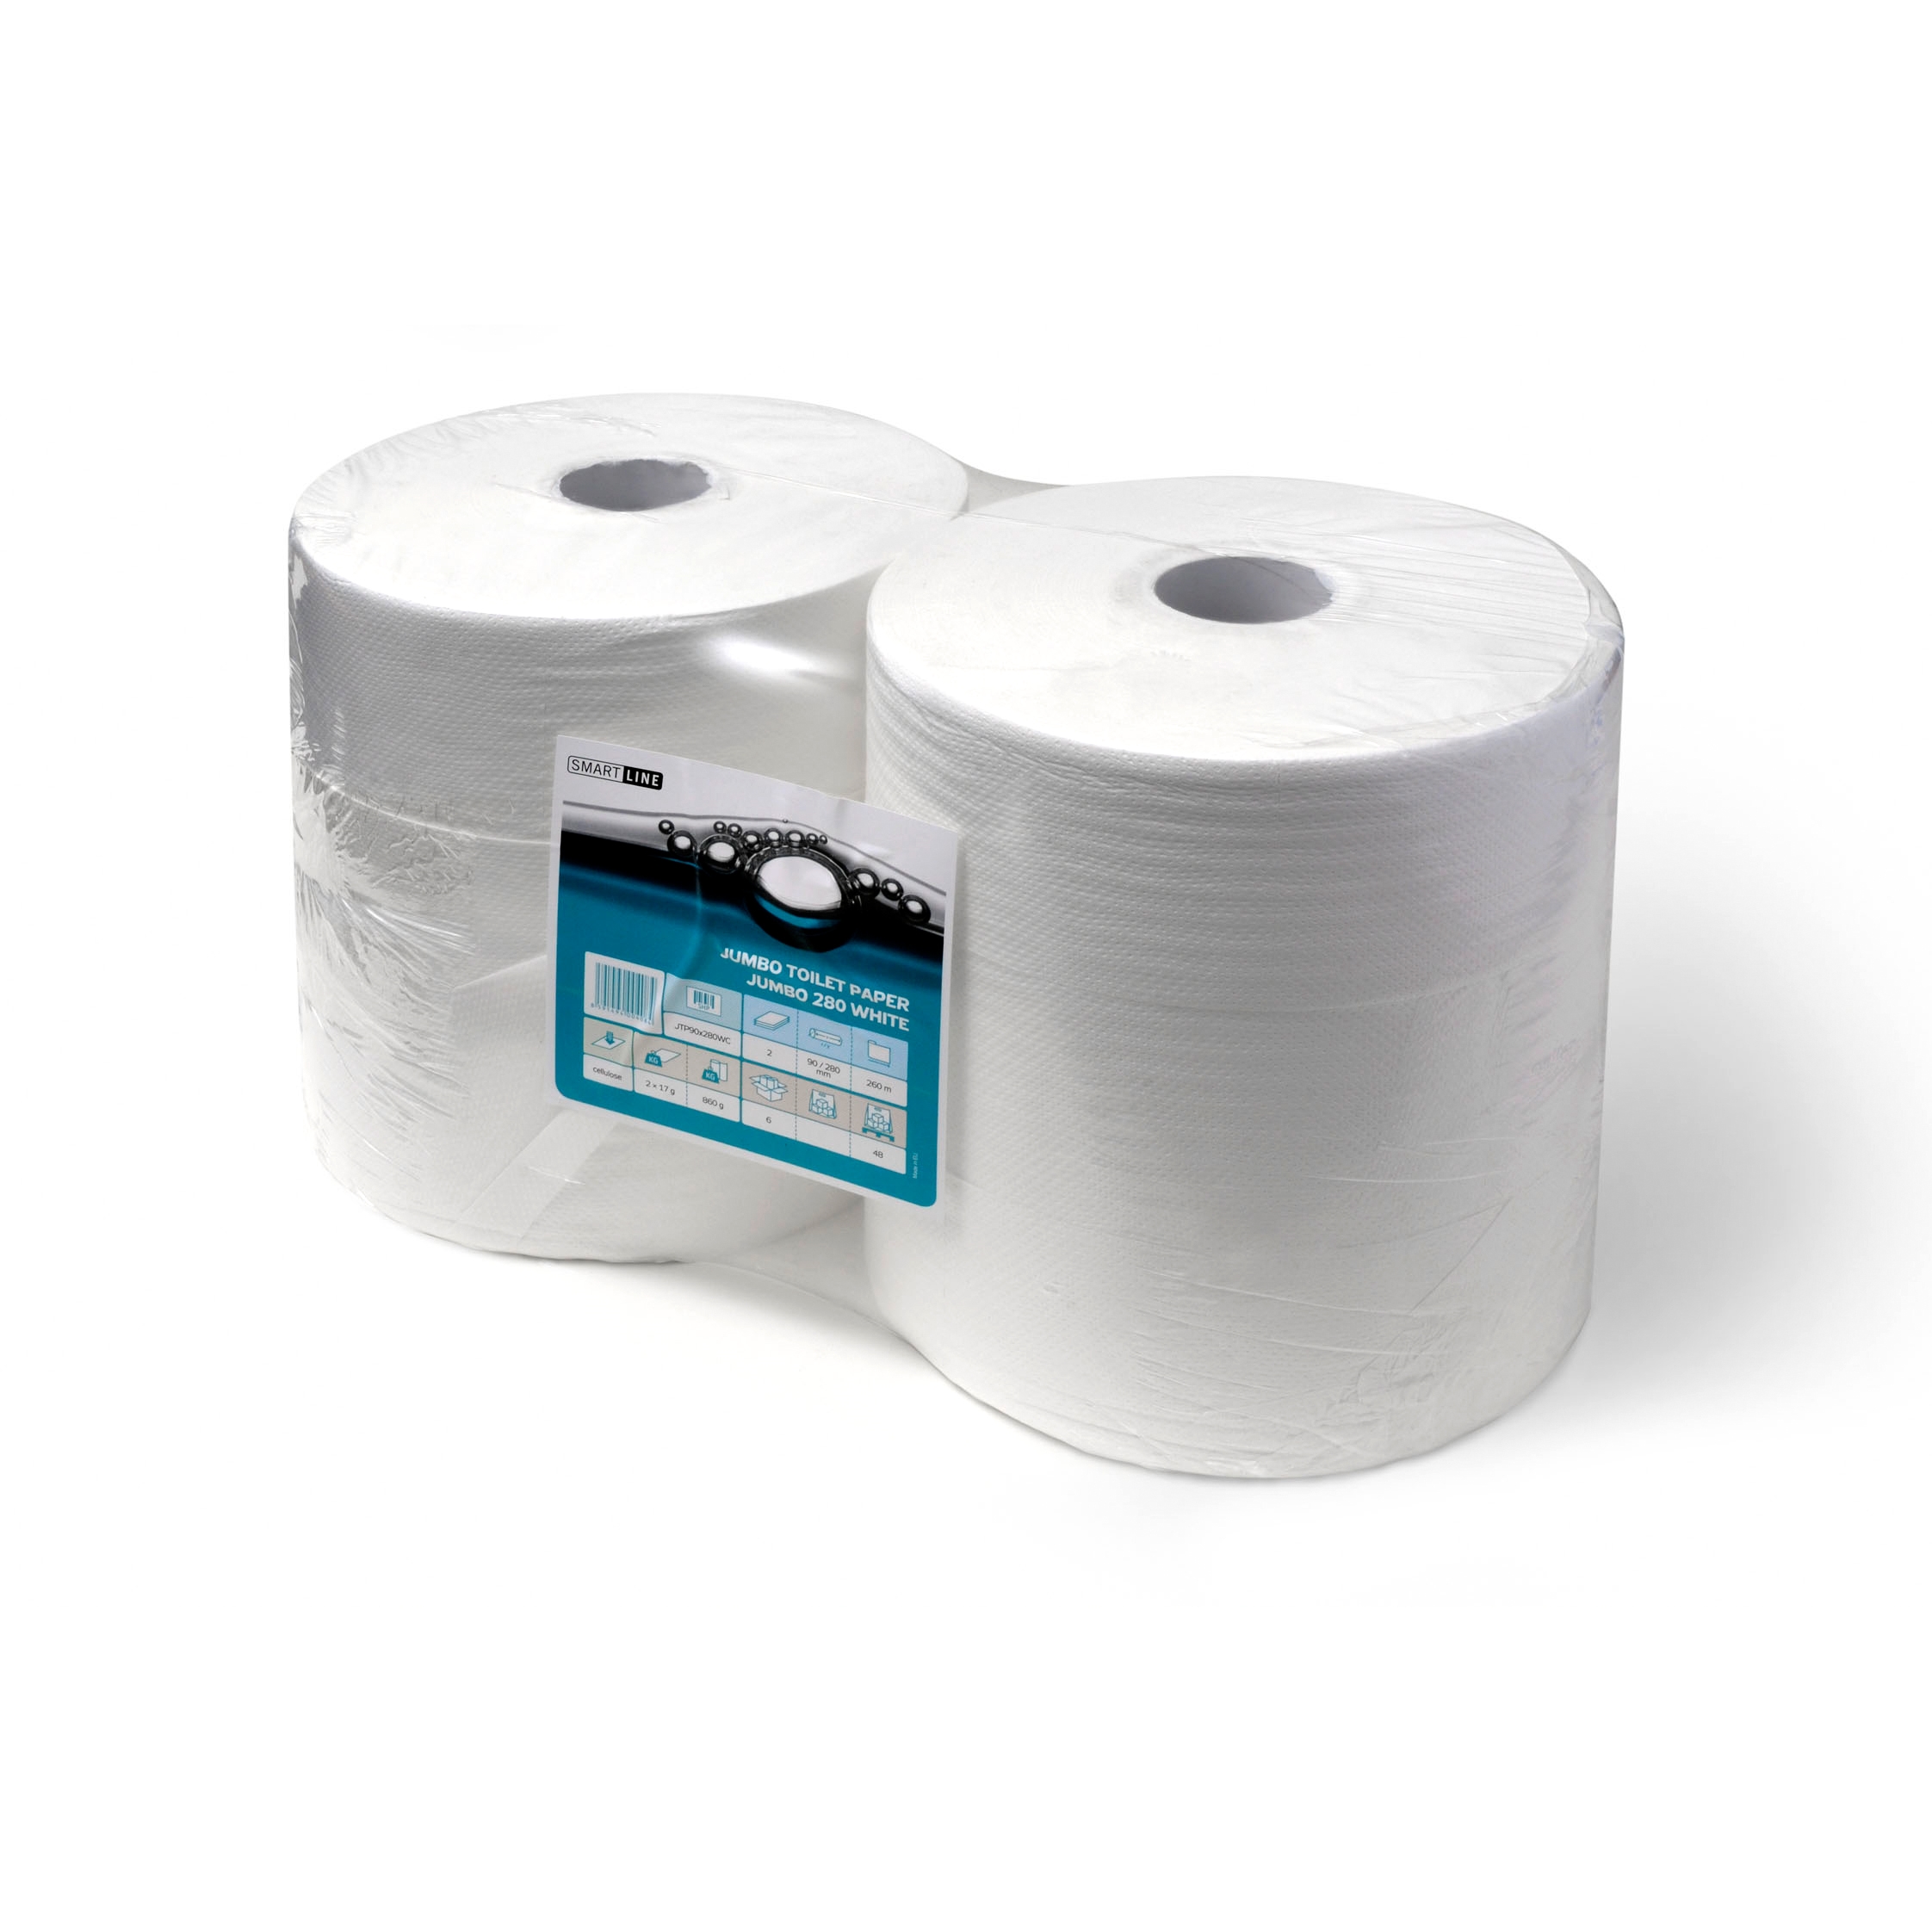 Papír toaletní v roli JUMBO šíře180 mm, 1 vrstva, recykl